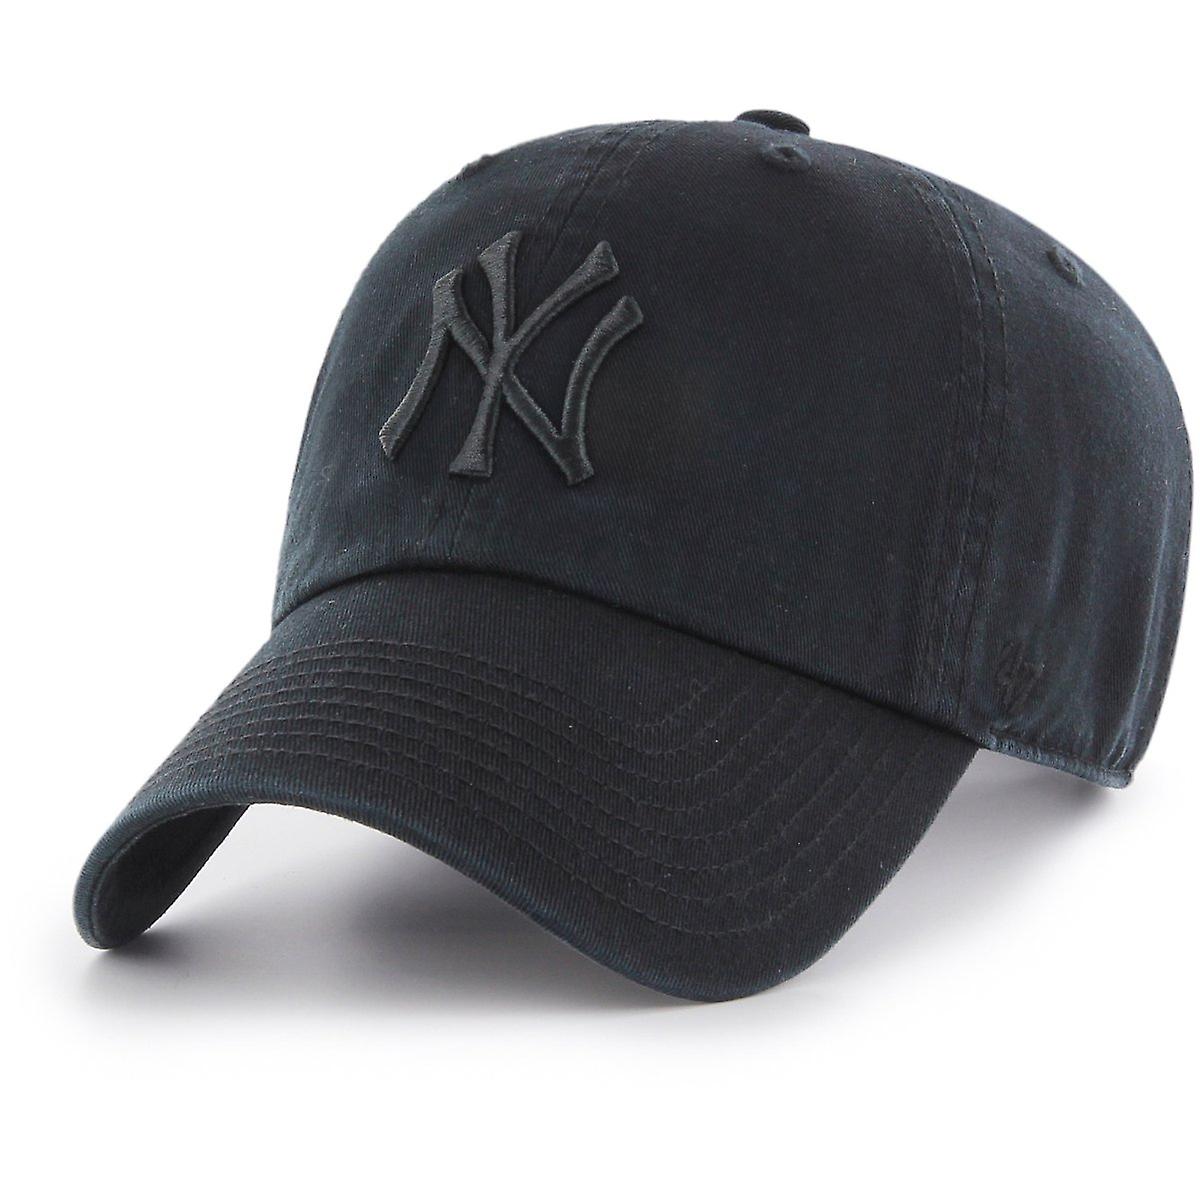 CLEAN UP MLB CAP BLACK ON BLACK YANKEES